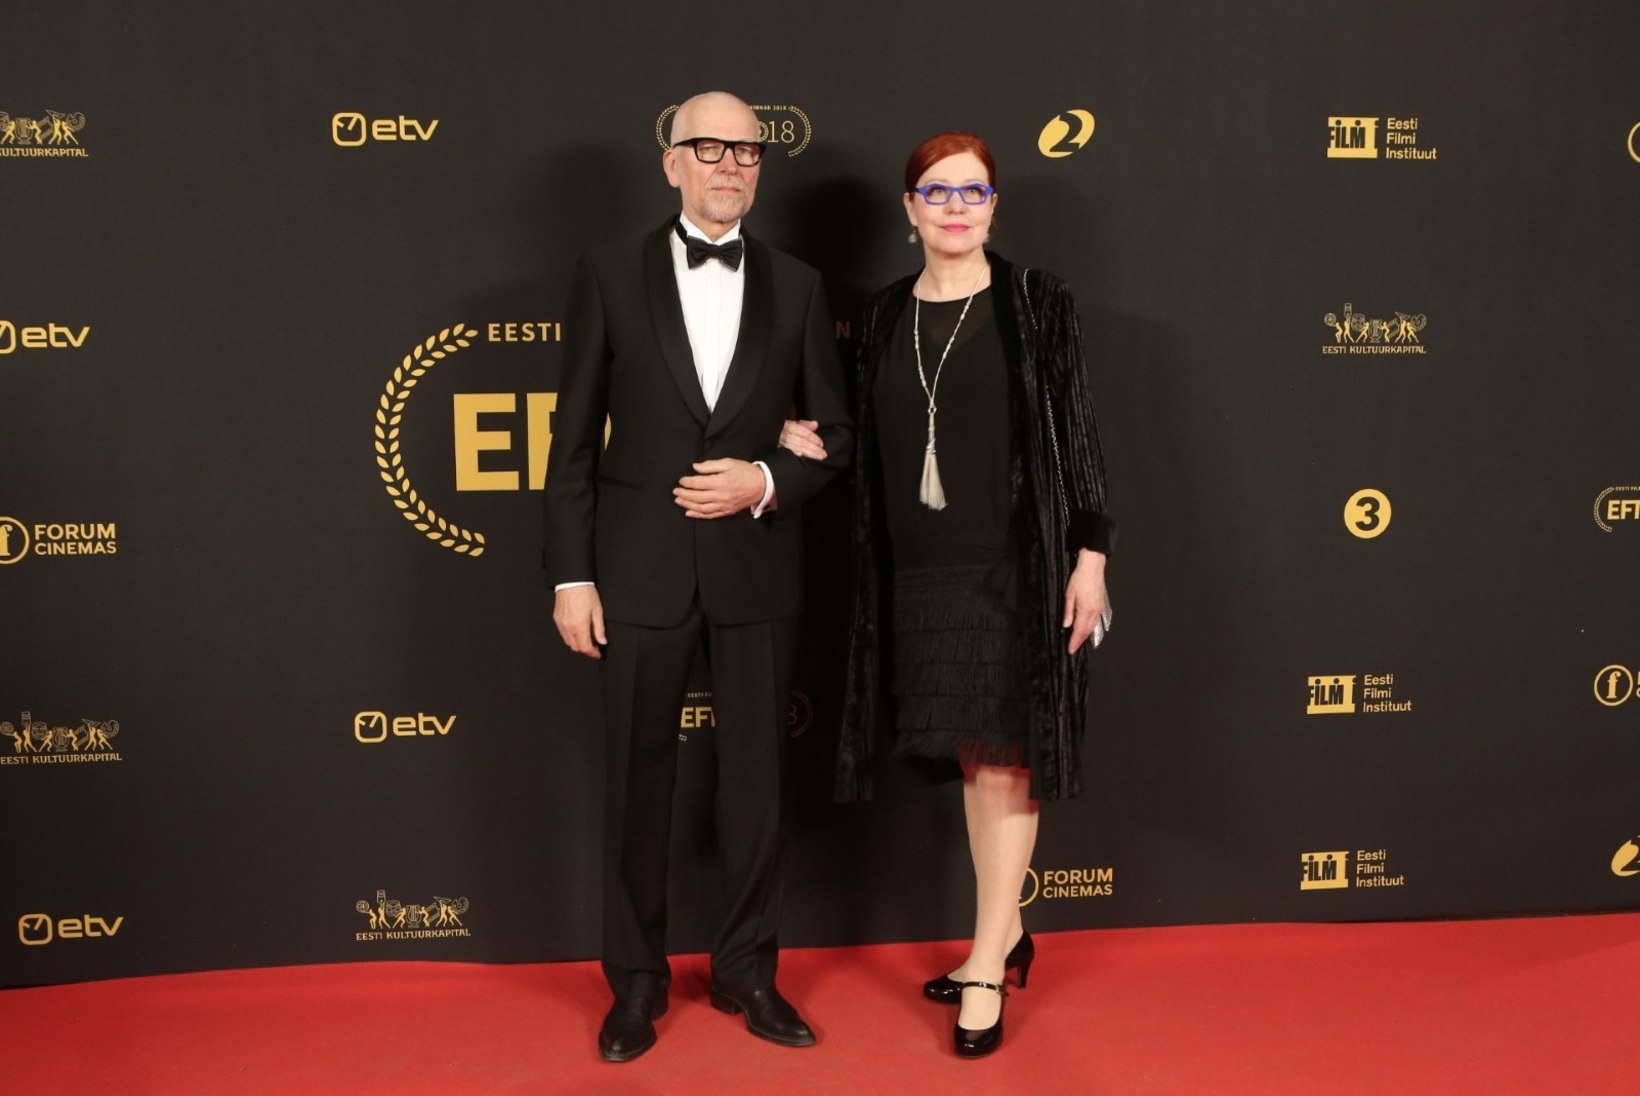 Kalju Kivi Soome filmiauhinnast: „Usun, et see auhind on praegu ilus remark, aga teha on veel palju.”